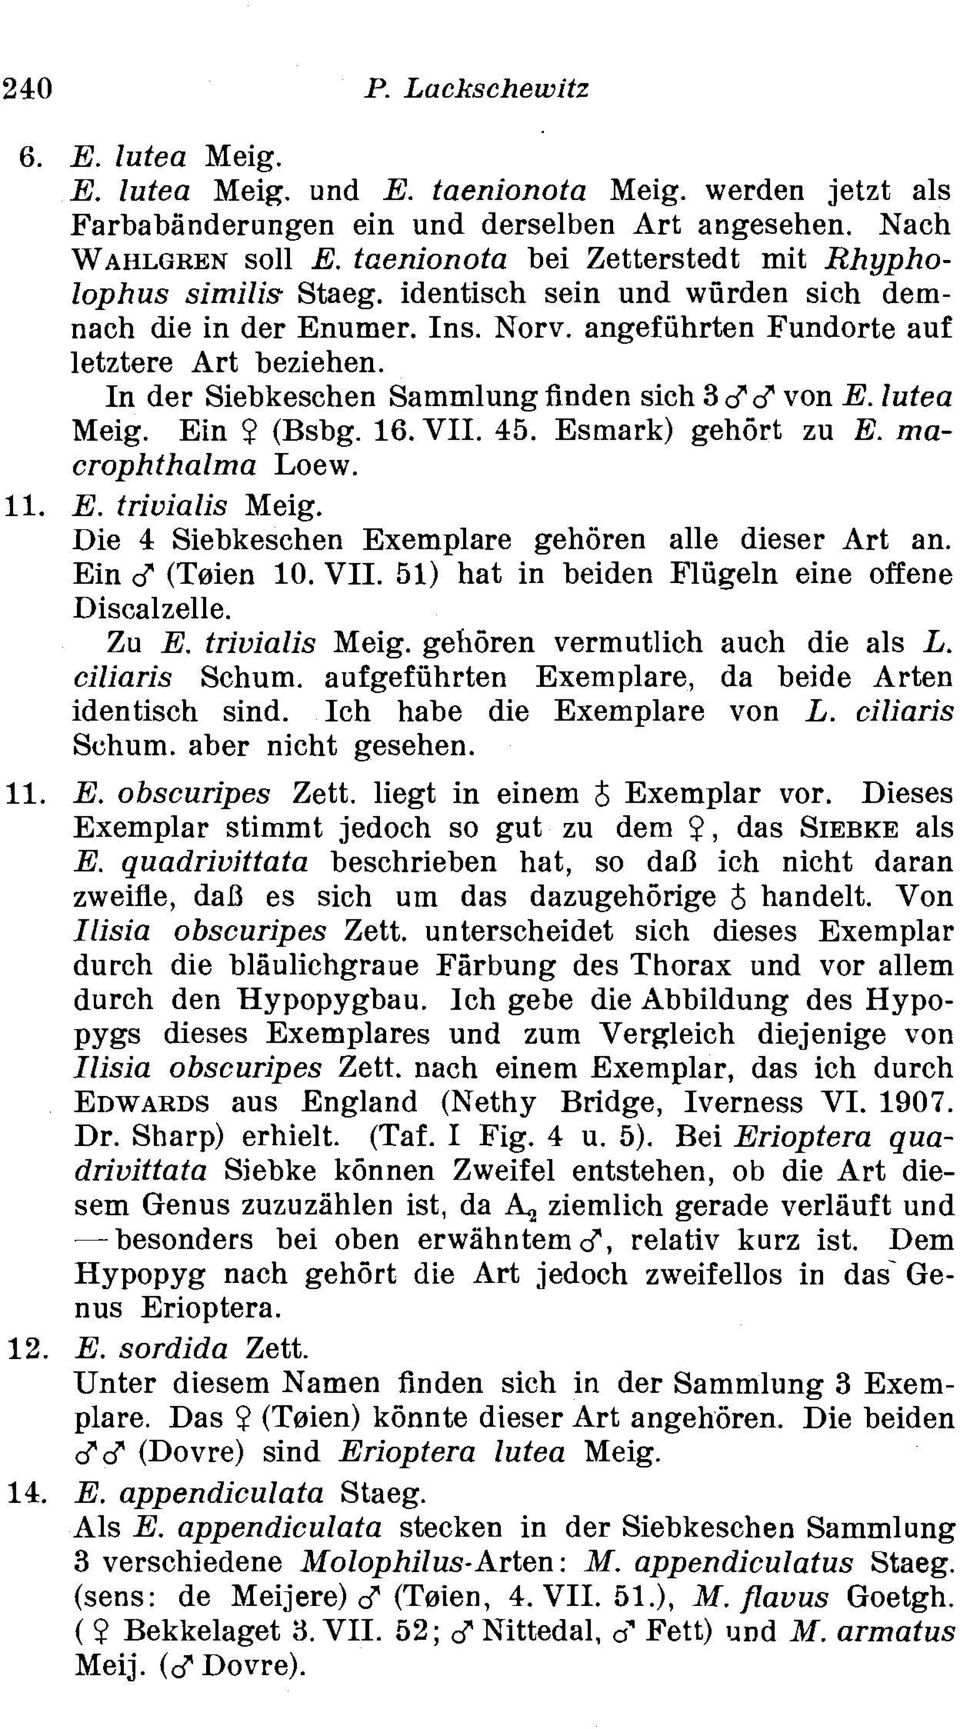 In der Siebkeschen Sammlung finden sich 366 von E. lutea Meig. Ein 9 (Bsbg. 16.VII. 45. Esmark) gehbrt zu E. macrophthalma Loew. 11. E. trivialis Meig.